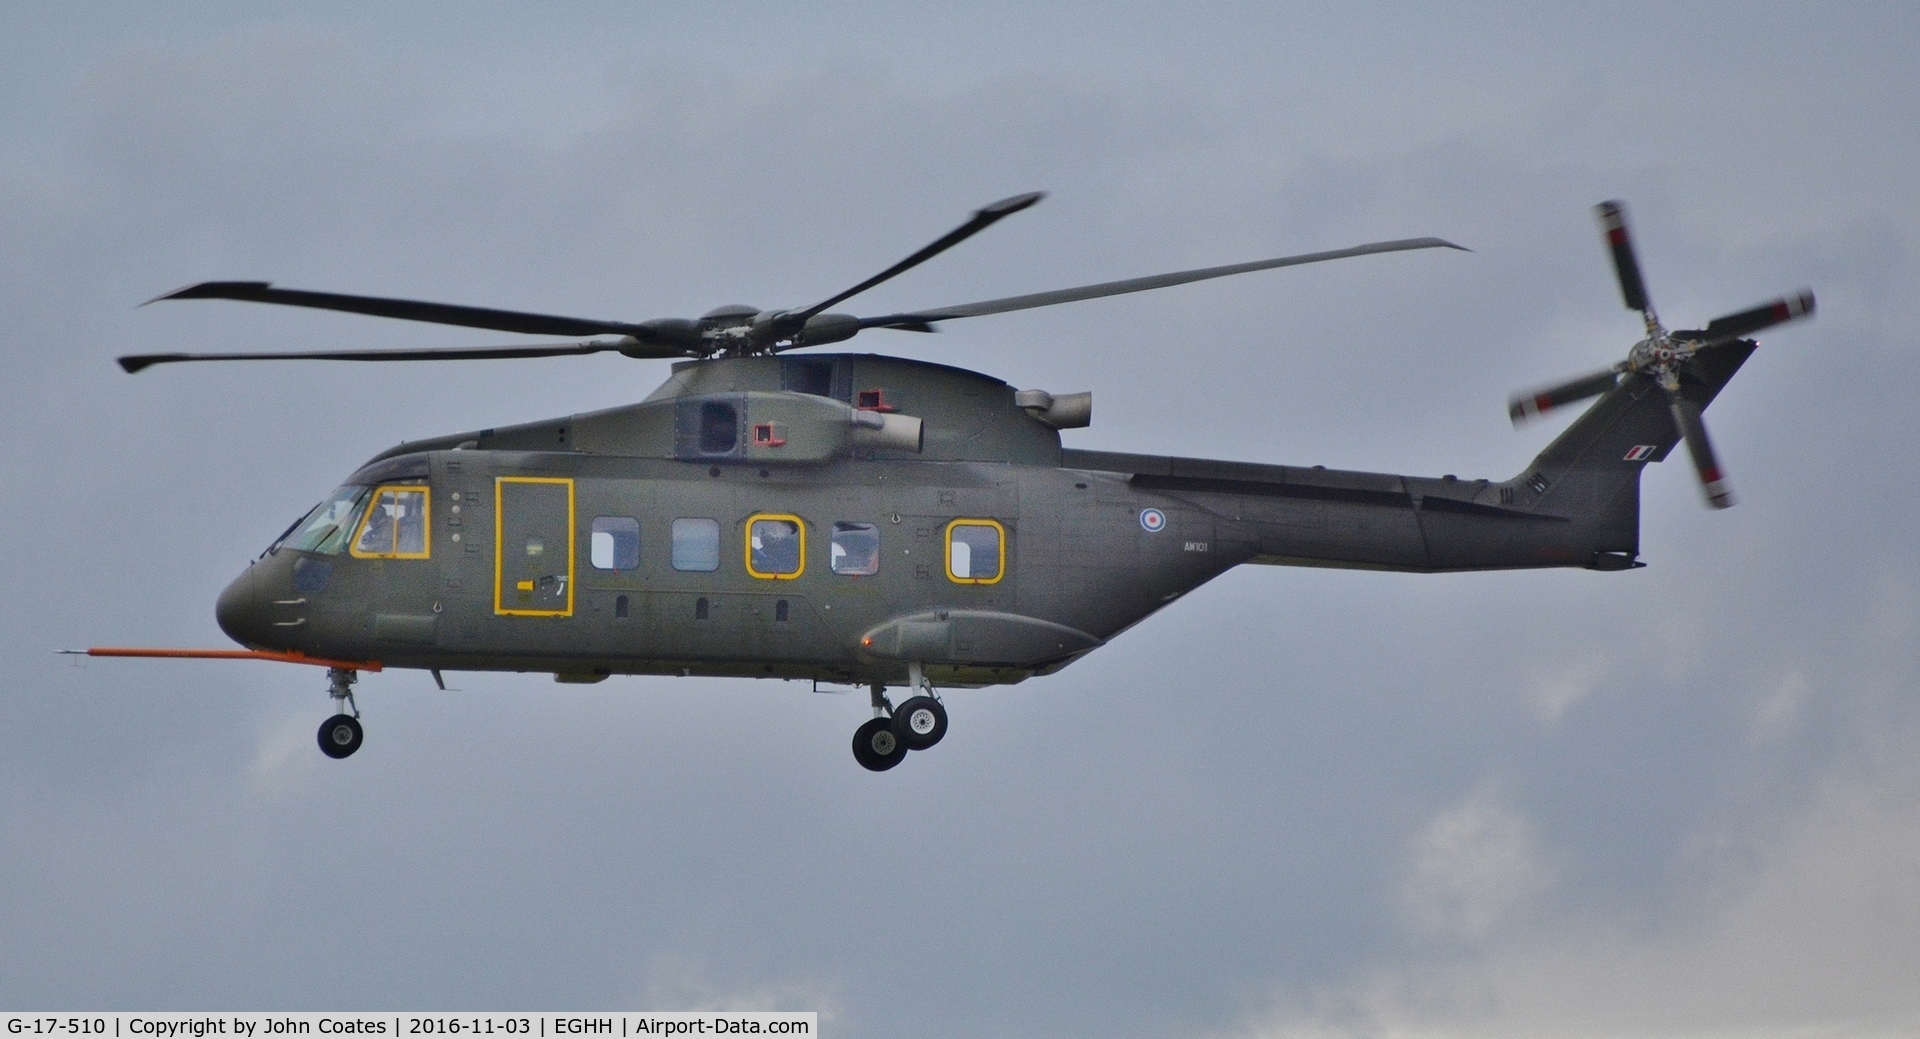 G-17-510, 2004 AgustaWestland EH-101 Mk.510 C/N 50012/510001/CIV01, ex G-17-510 training from Yeovil